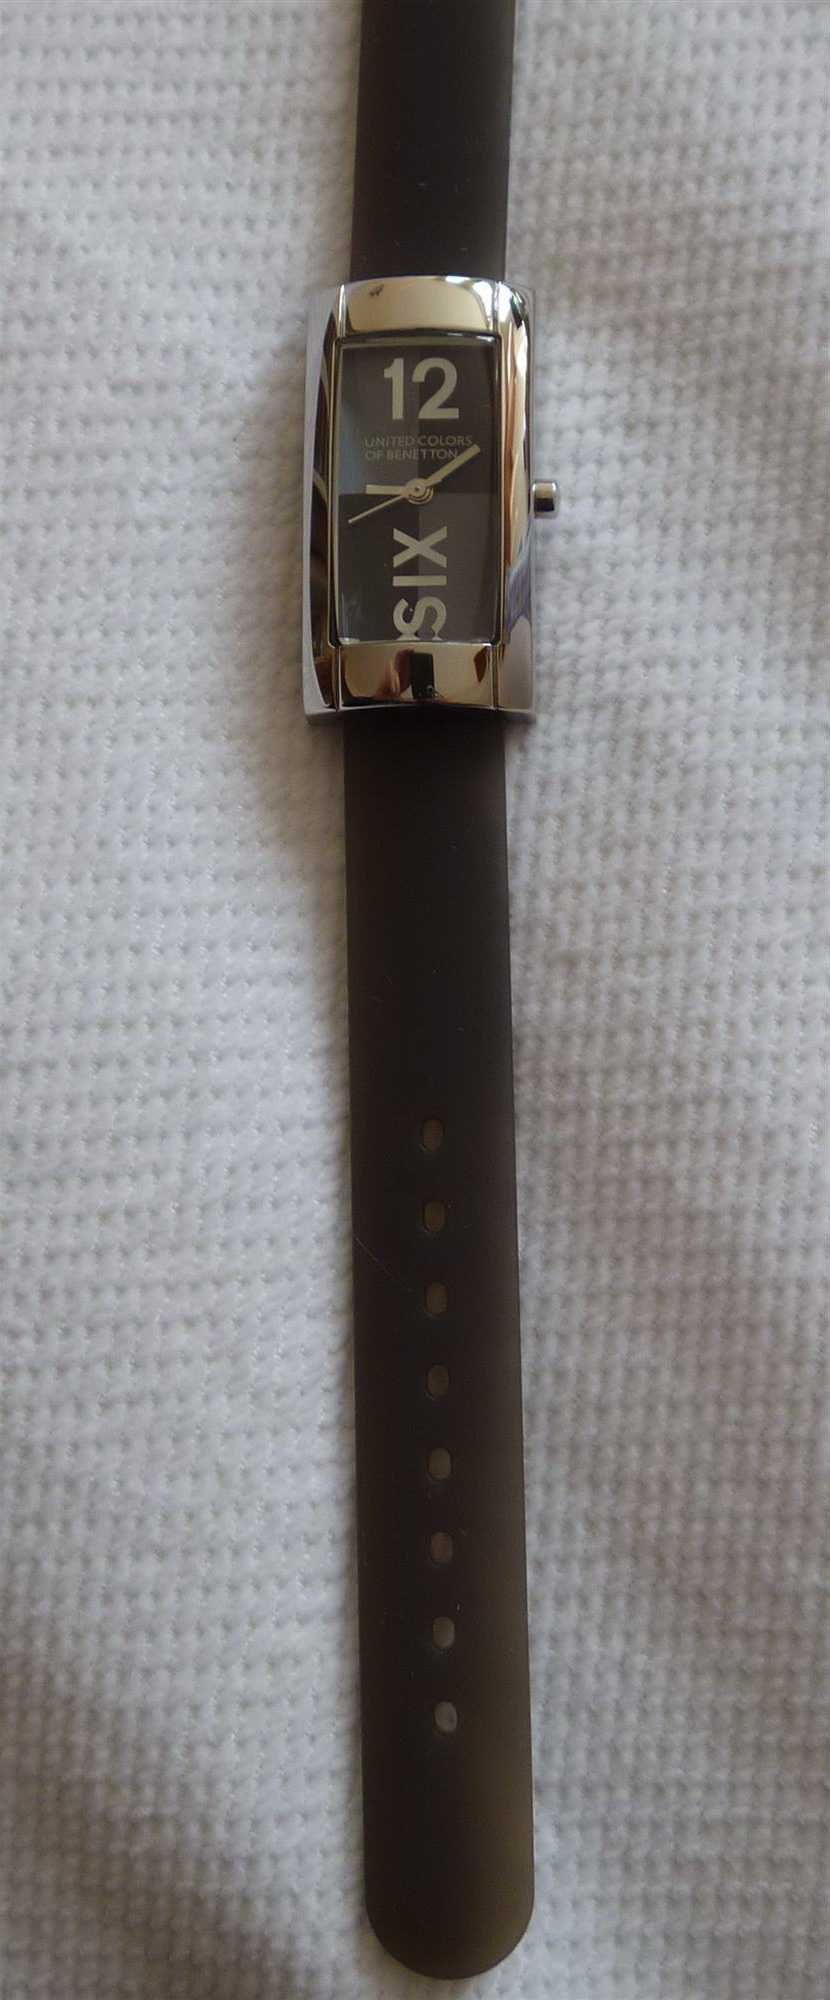 Нов! Ръчен часовник Бенетон UNITED COLORS OF BENETTON